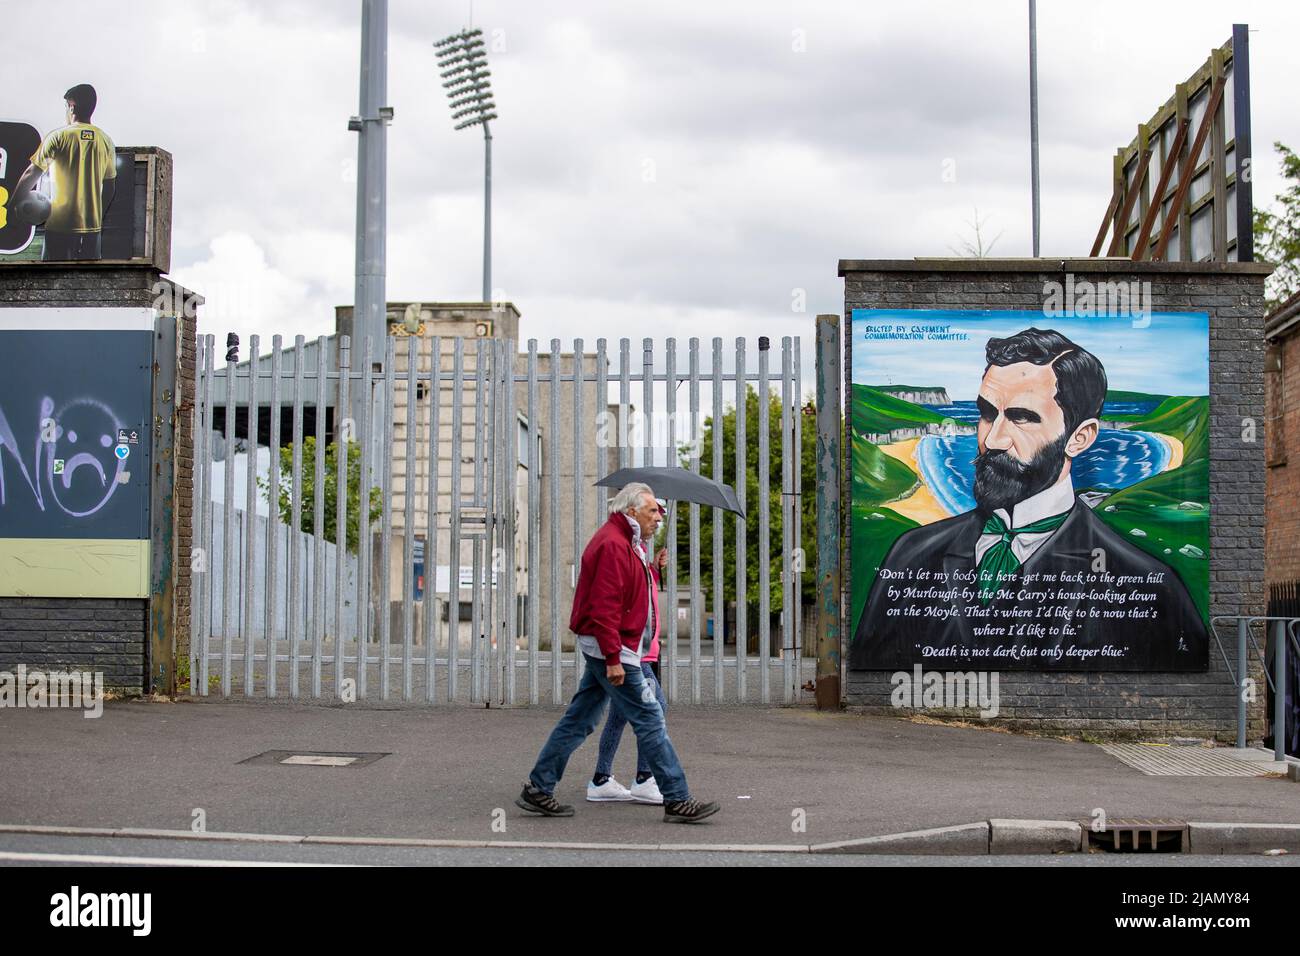 Menschen, die am Casement Park, dem wichtigsten gälischen Spielstadion in Belfast, Nordirland, vorbeilaufen. Eine Klage einer Anwohnergruppe gegen eine Entscheidung, die Baugenehmigung für die Sanierung des Casement Park der GAA in Belfast zu erteilen, wurde abgewiesen. Bilddatum: Dienstag, 31. Mai 2022. Stockfoto